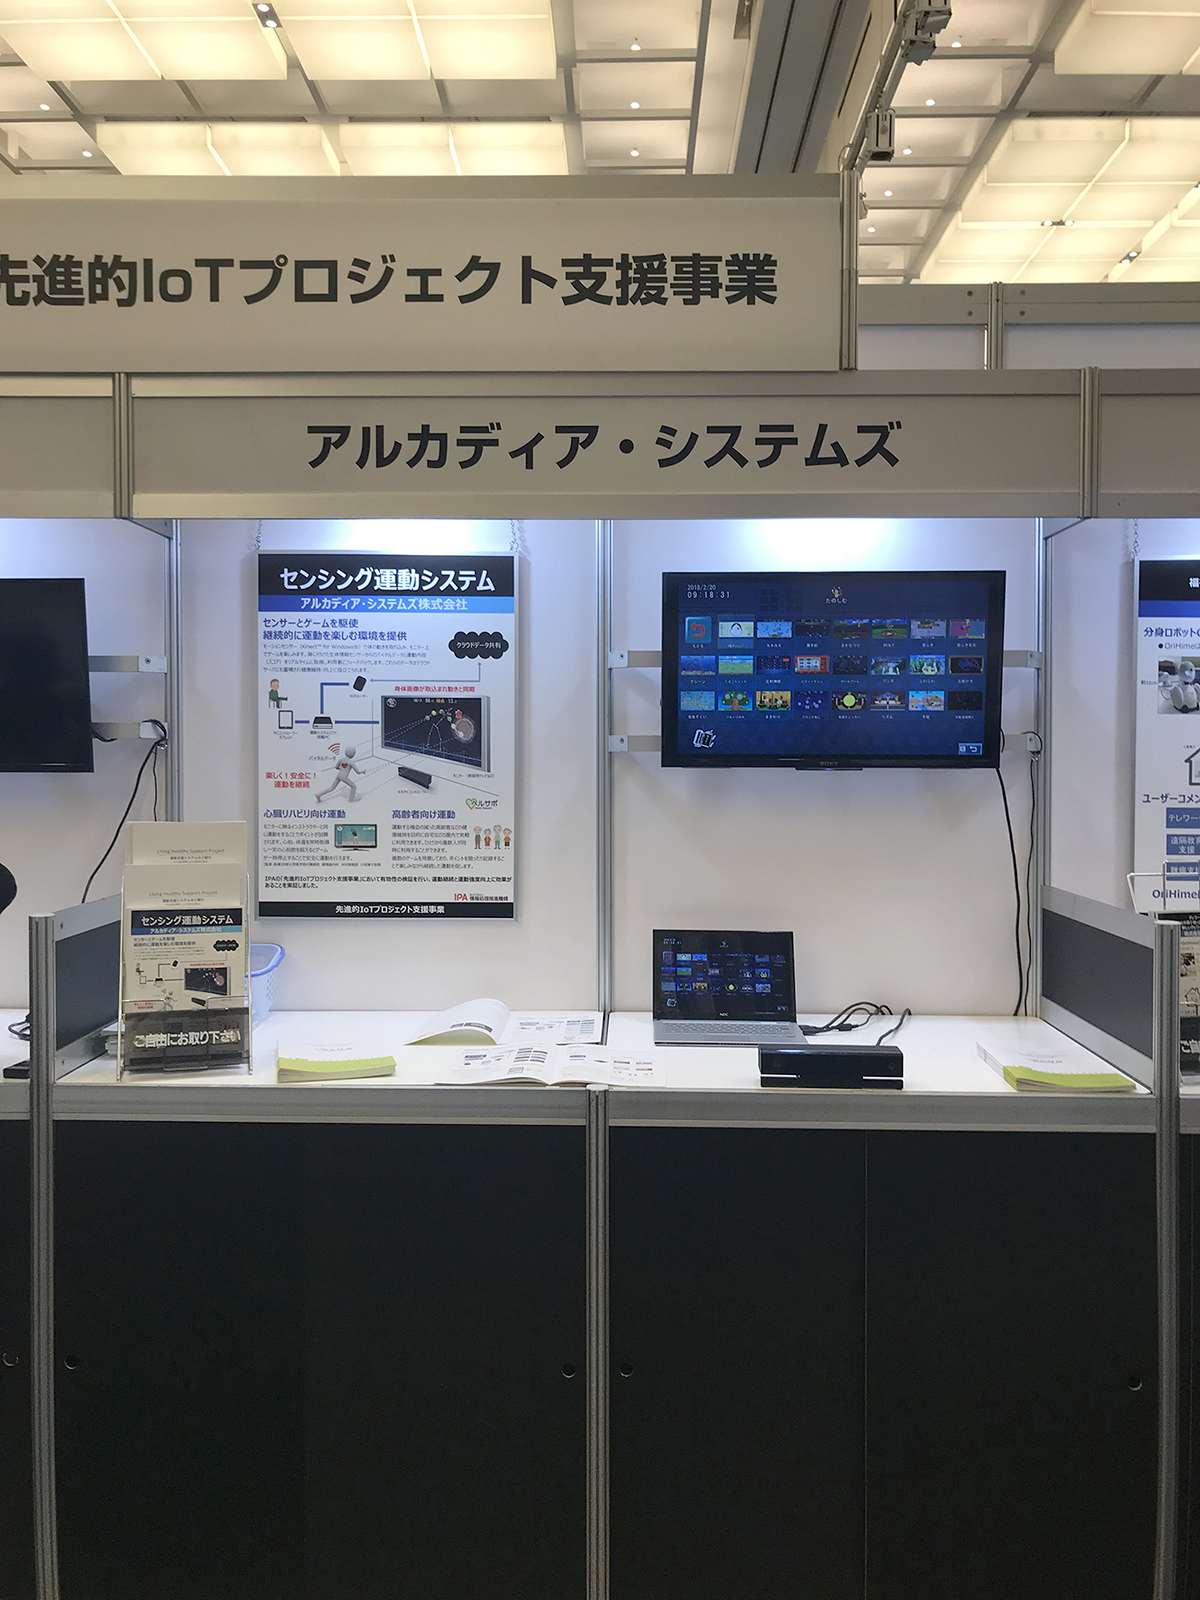 IoT Japan 東京での先進的IoTプロジェクトに「ヘルサポ」を出展